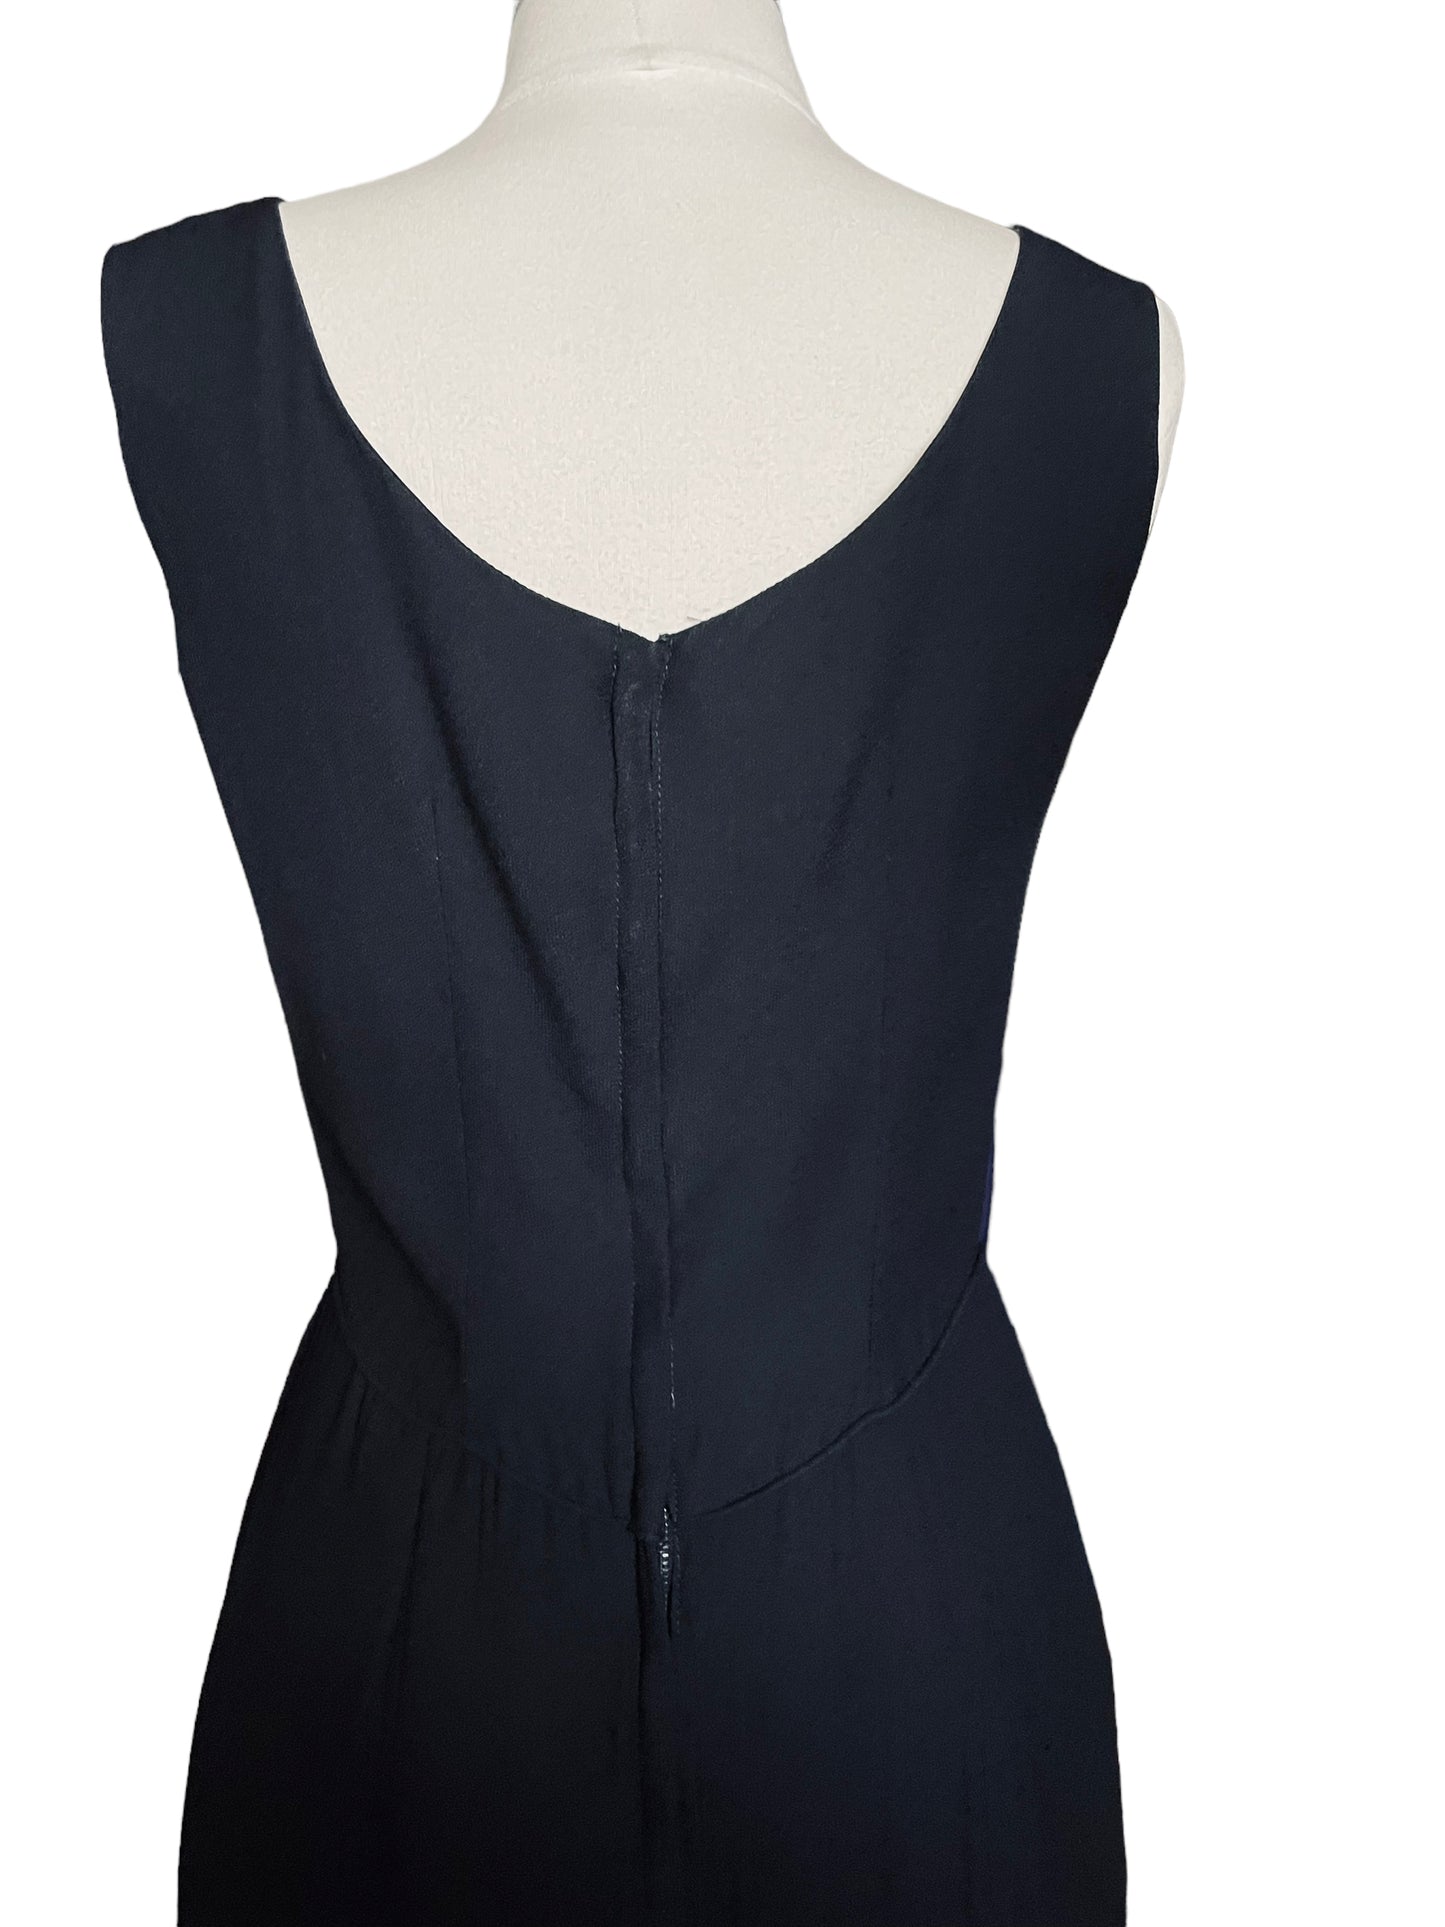 Vintage 1950s Alfred Werber Black Maxi Dress |  Barn Owl Vintage | Seattle Vintage Dresses